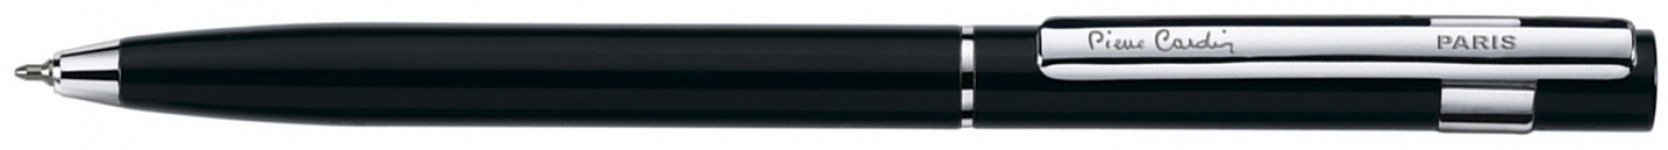 Шариковая ручка Pierre Cardin EASY. Корпус - алюминий, детали дизайна - сталь и хром. Цвет - черный.